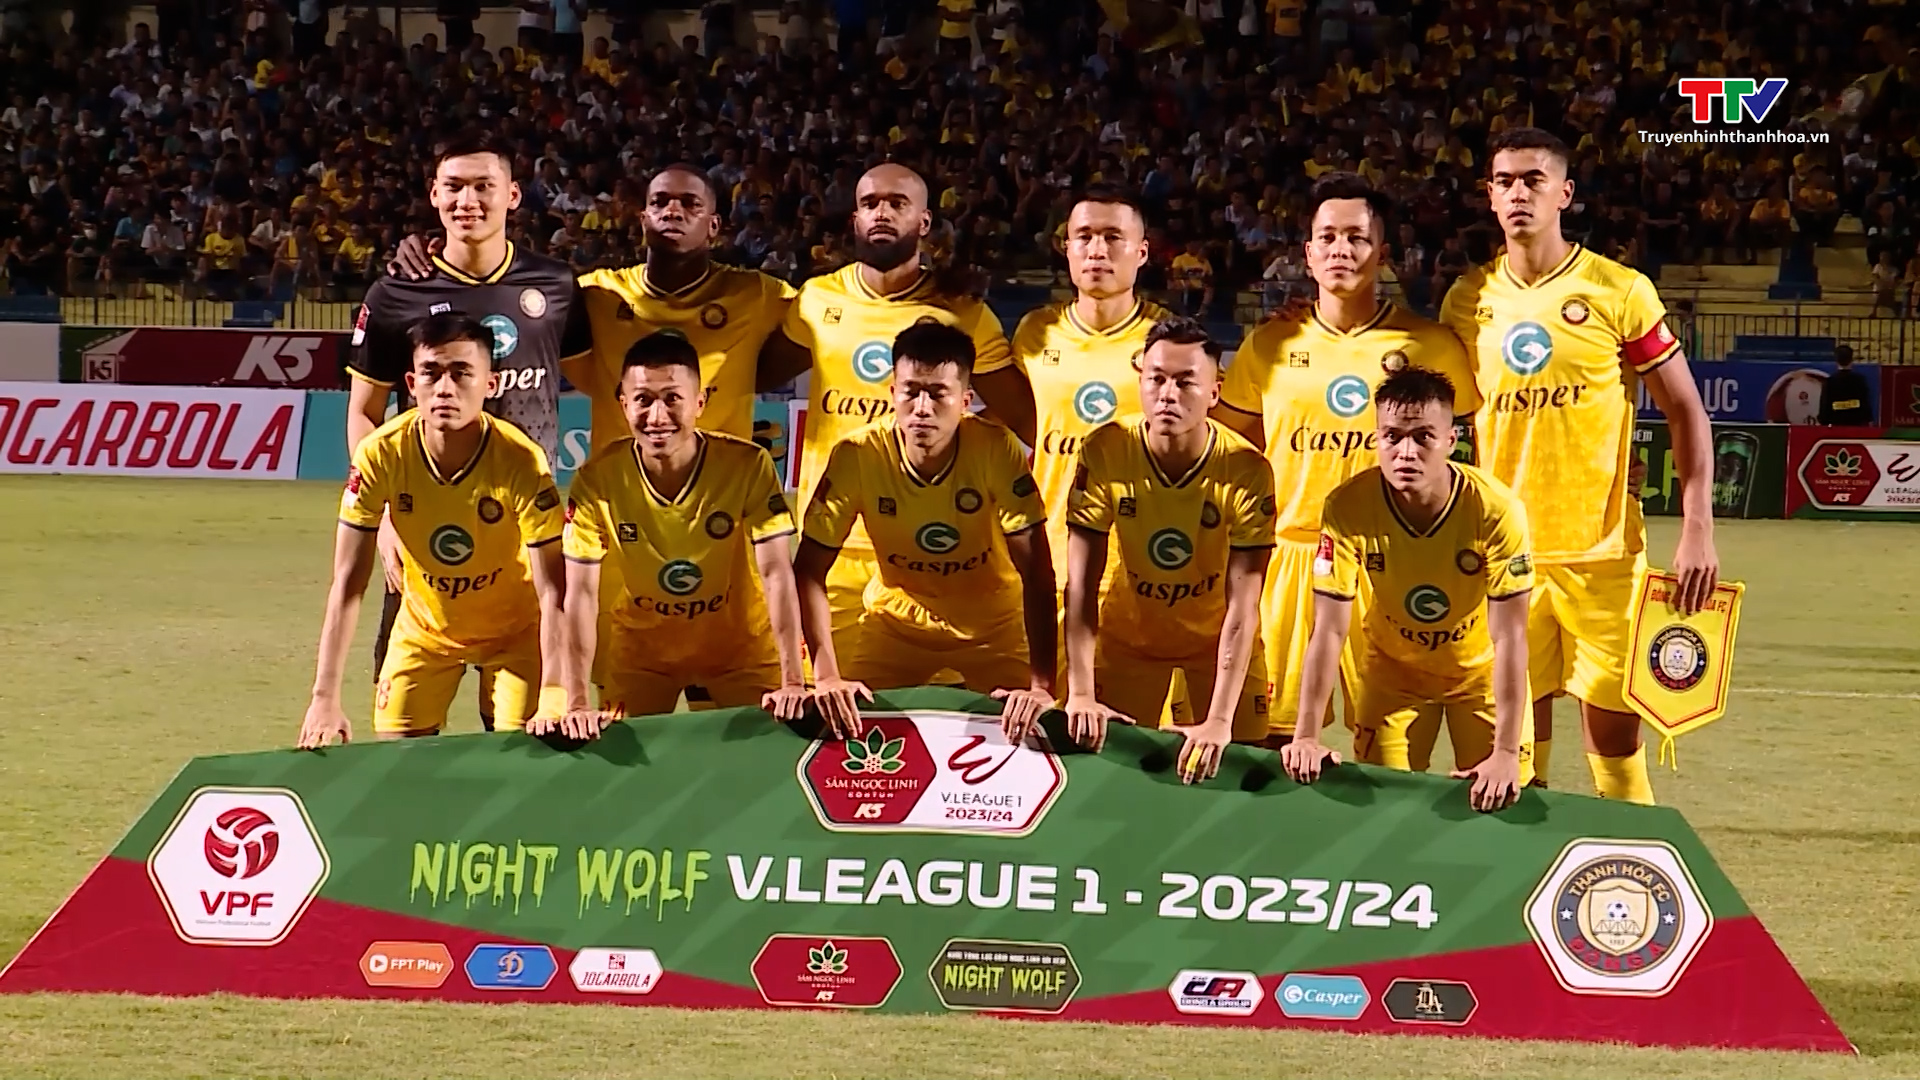 Câu lạc bộ Đông Á Thanh Hóa bất bại sau 3 vòng đấu đầu tiên tại V.League 2023/2024 - Ảnh 5.